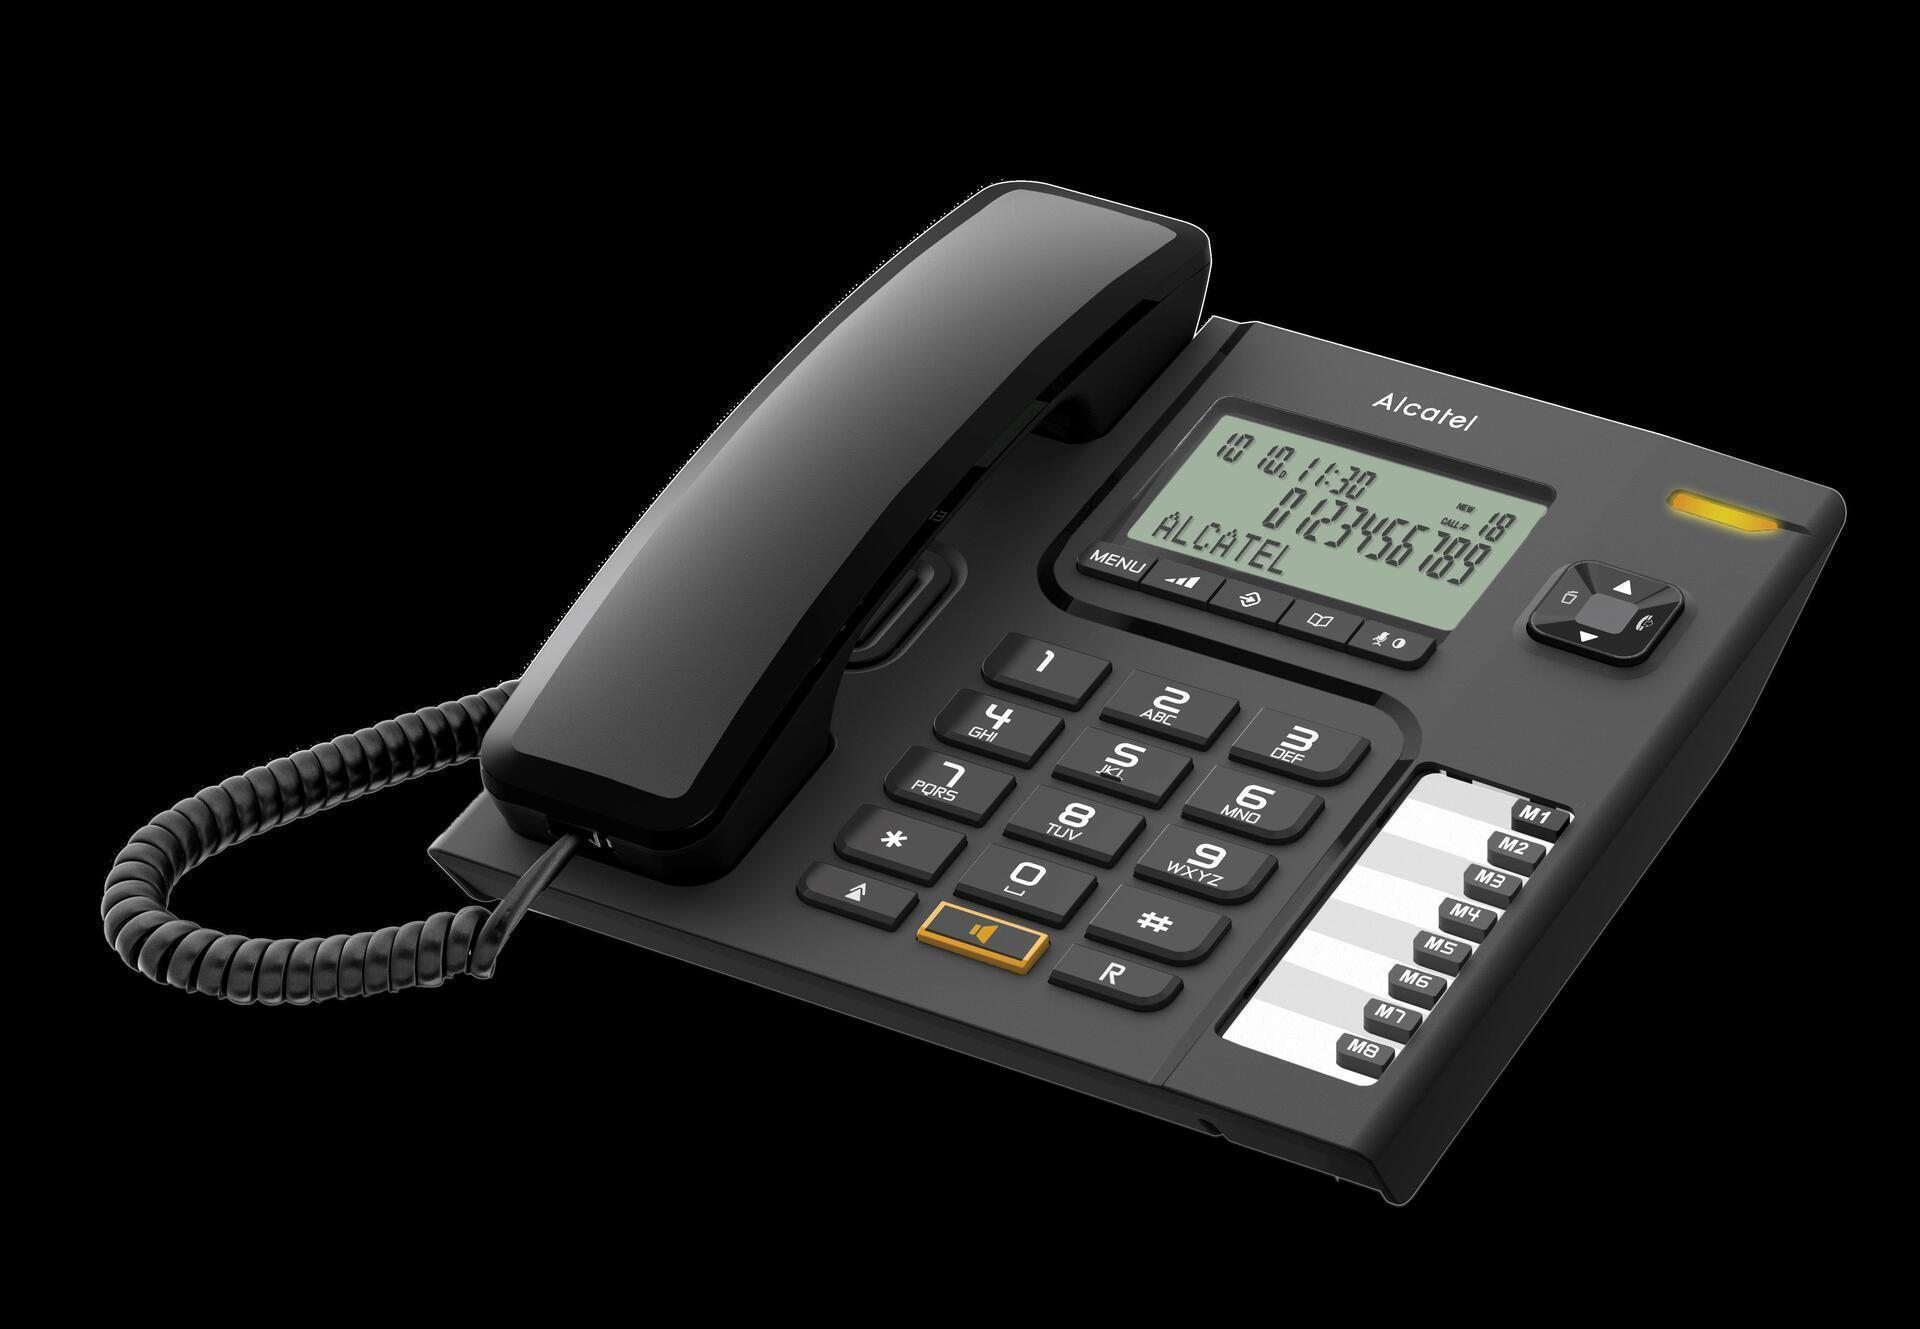 Alcatel T76 DECT Telefon Kabelgebundenes Mobilteil Freisprecheinrichtung 18 Eintragungen Anrufer Identifikation Schwarz (T76)  - Onlineshop JACOB Elektronik